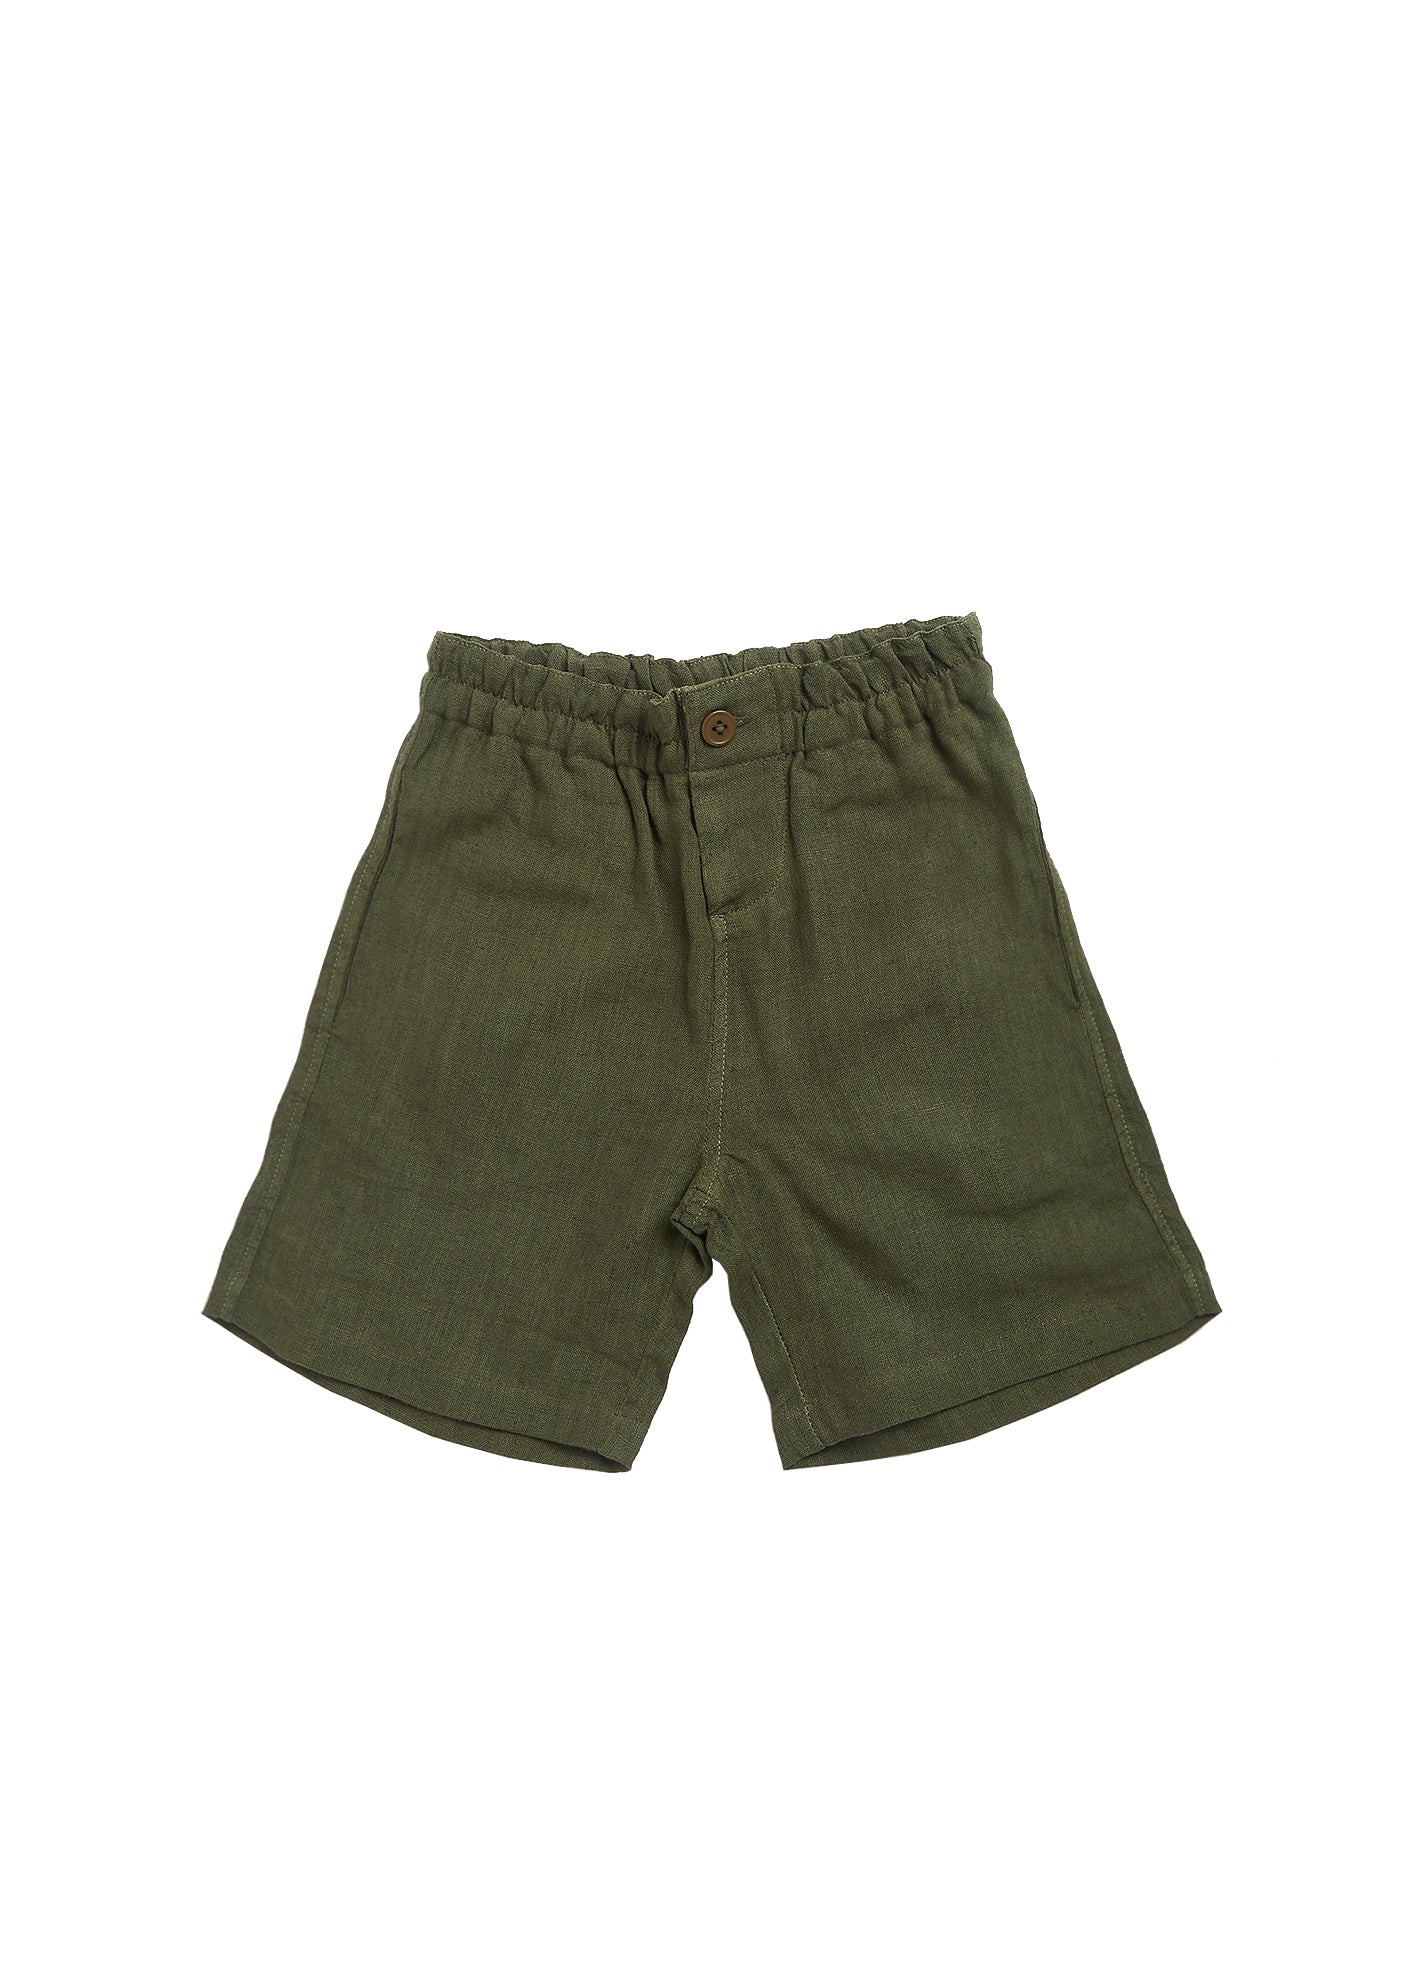 Boys & Girls Army Green Shorts